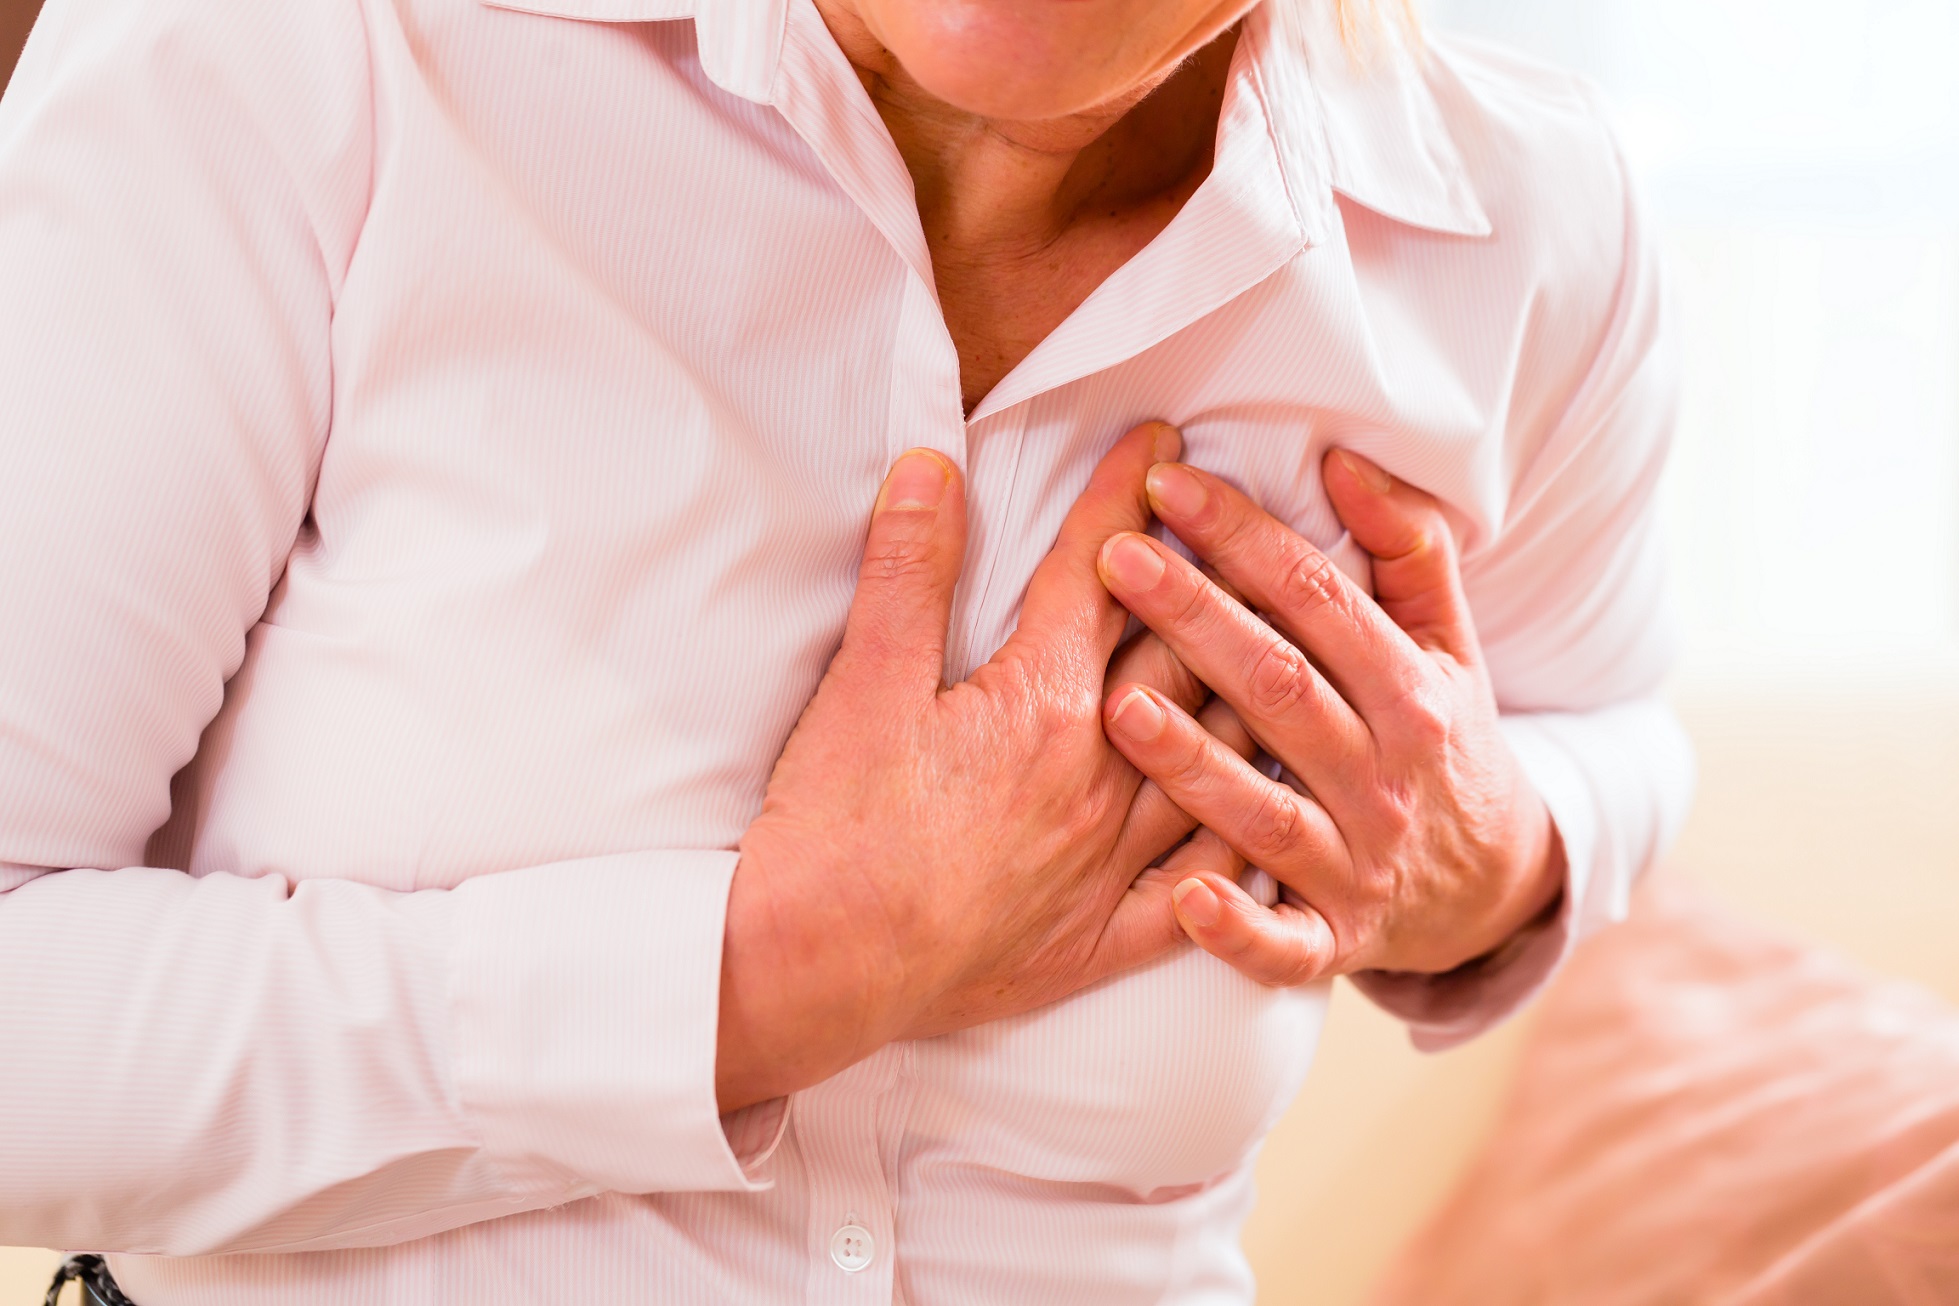 Le risque d’infarctus du myocarde est souvent méconnu chez les femmes, alors qu'elles sont de plus en plus victimes de&nbsp;maladies cardiovasculaires. © Kzenon, Shutterstock